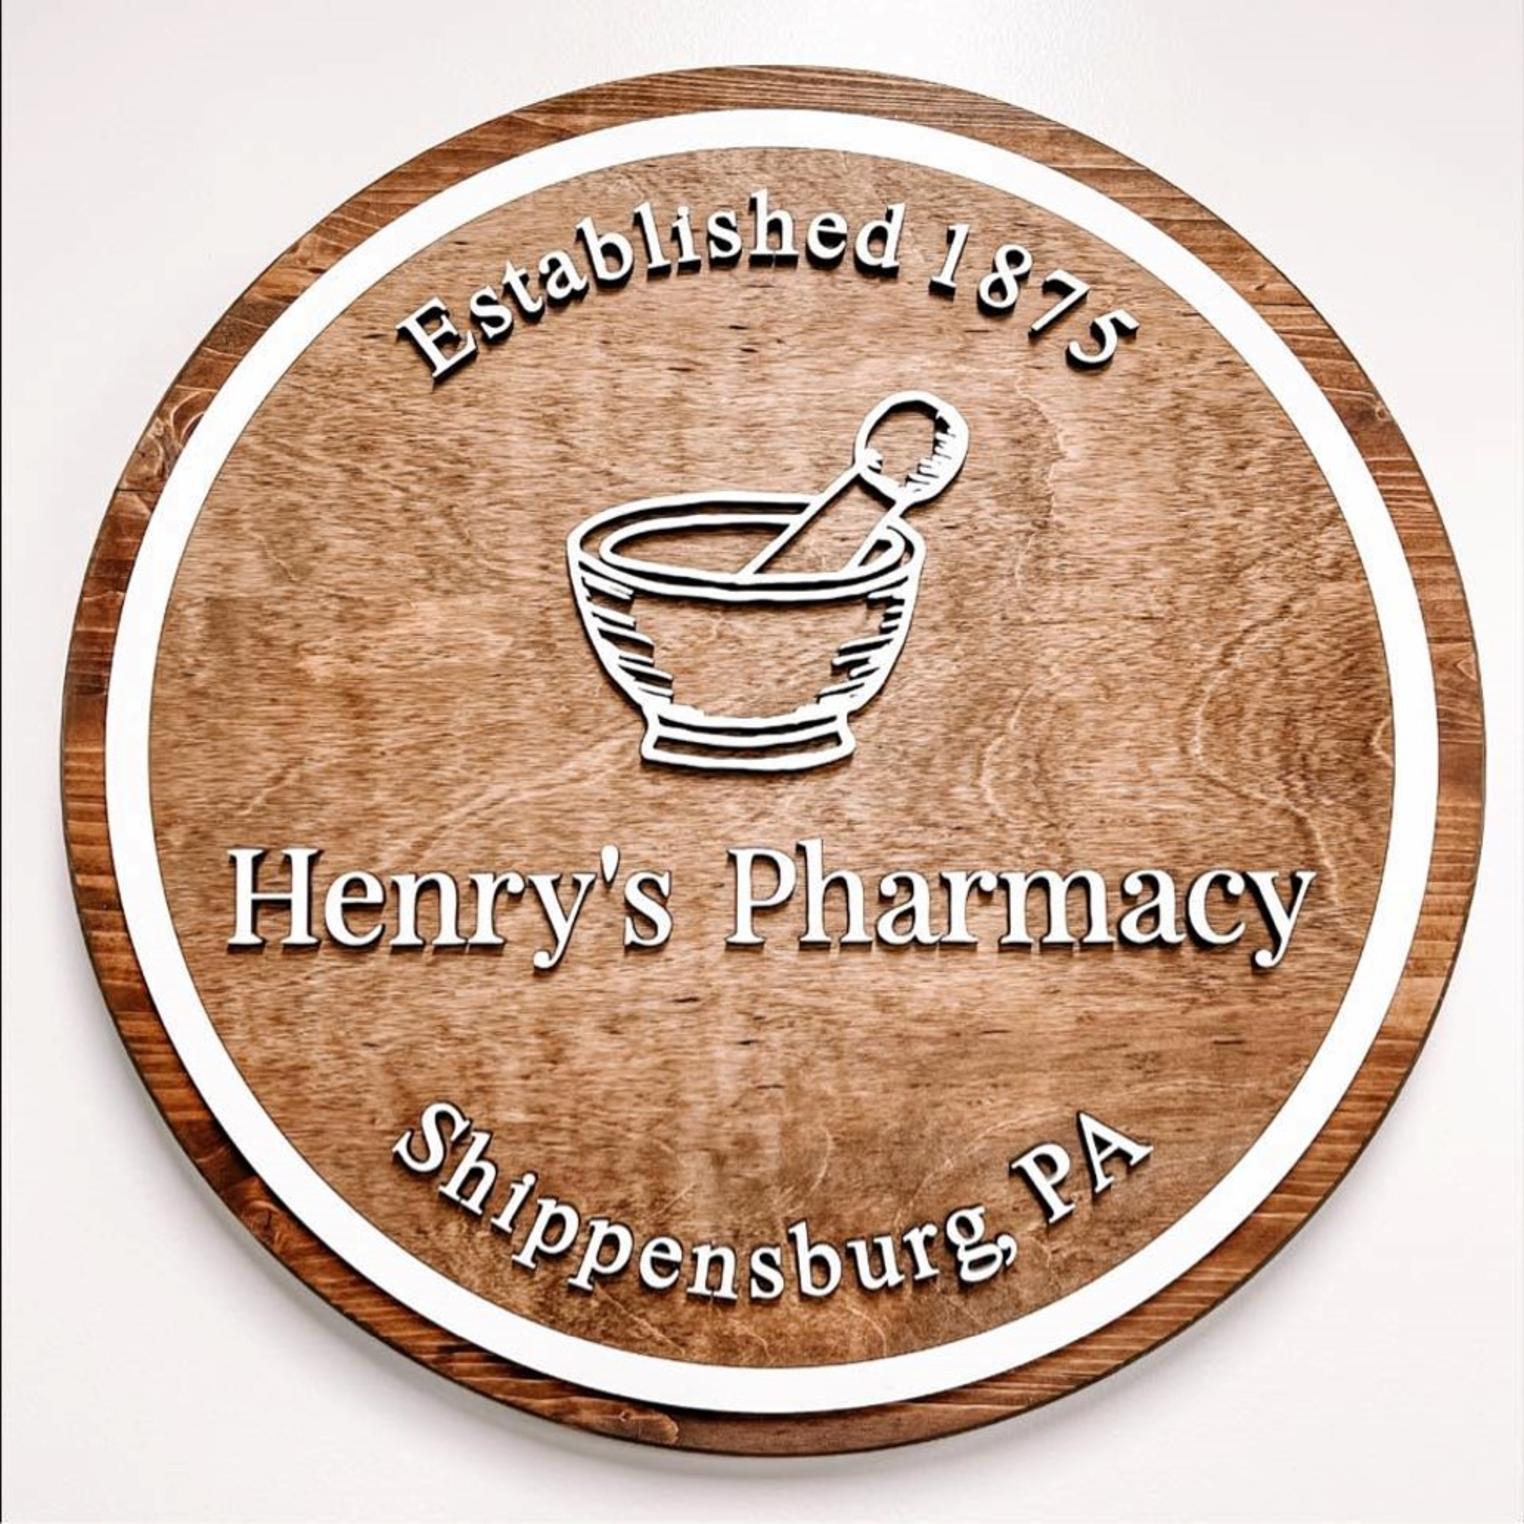 Henry's Pharmacy